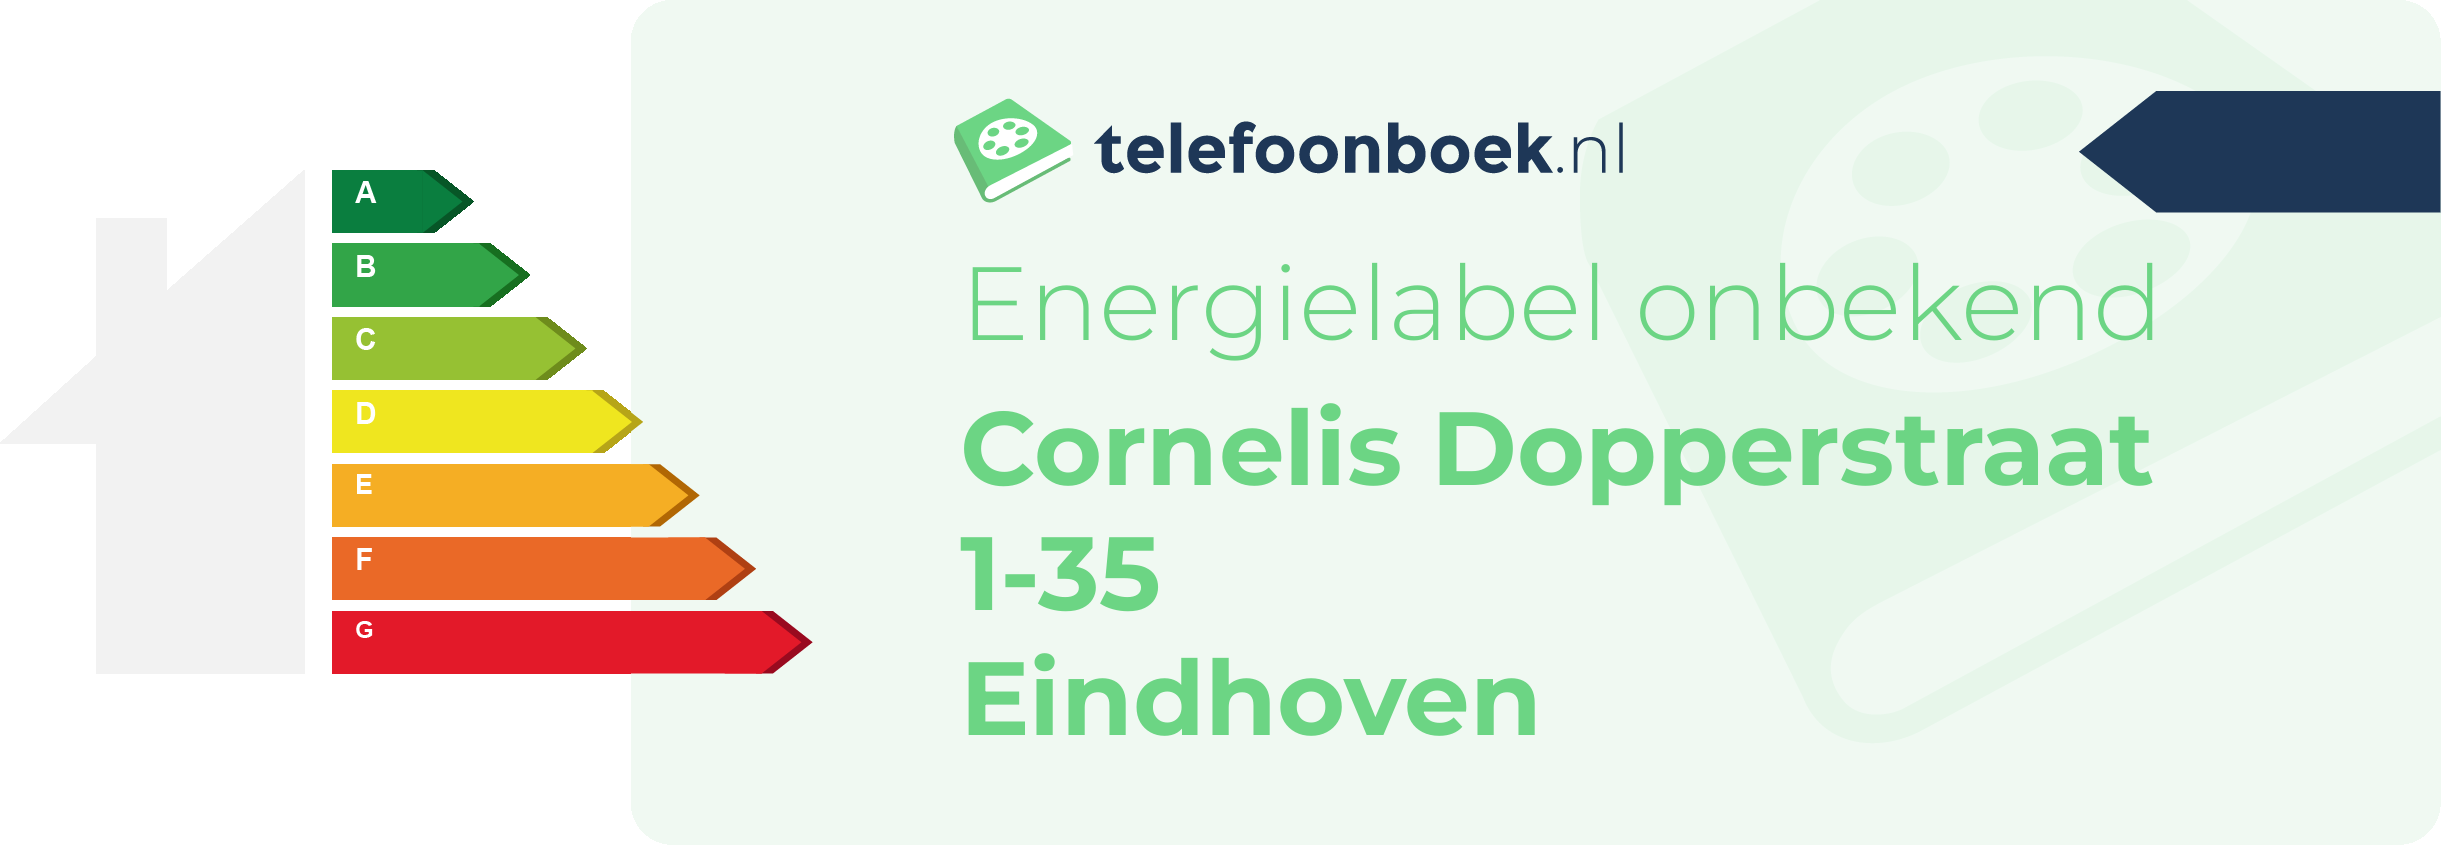 Energielabel Cornelis Dopperstraat 1-35 Eindhoven